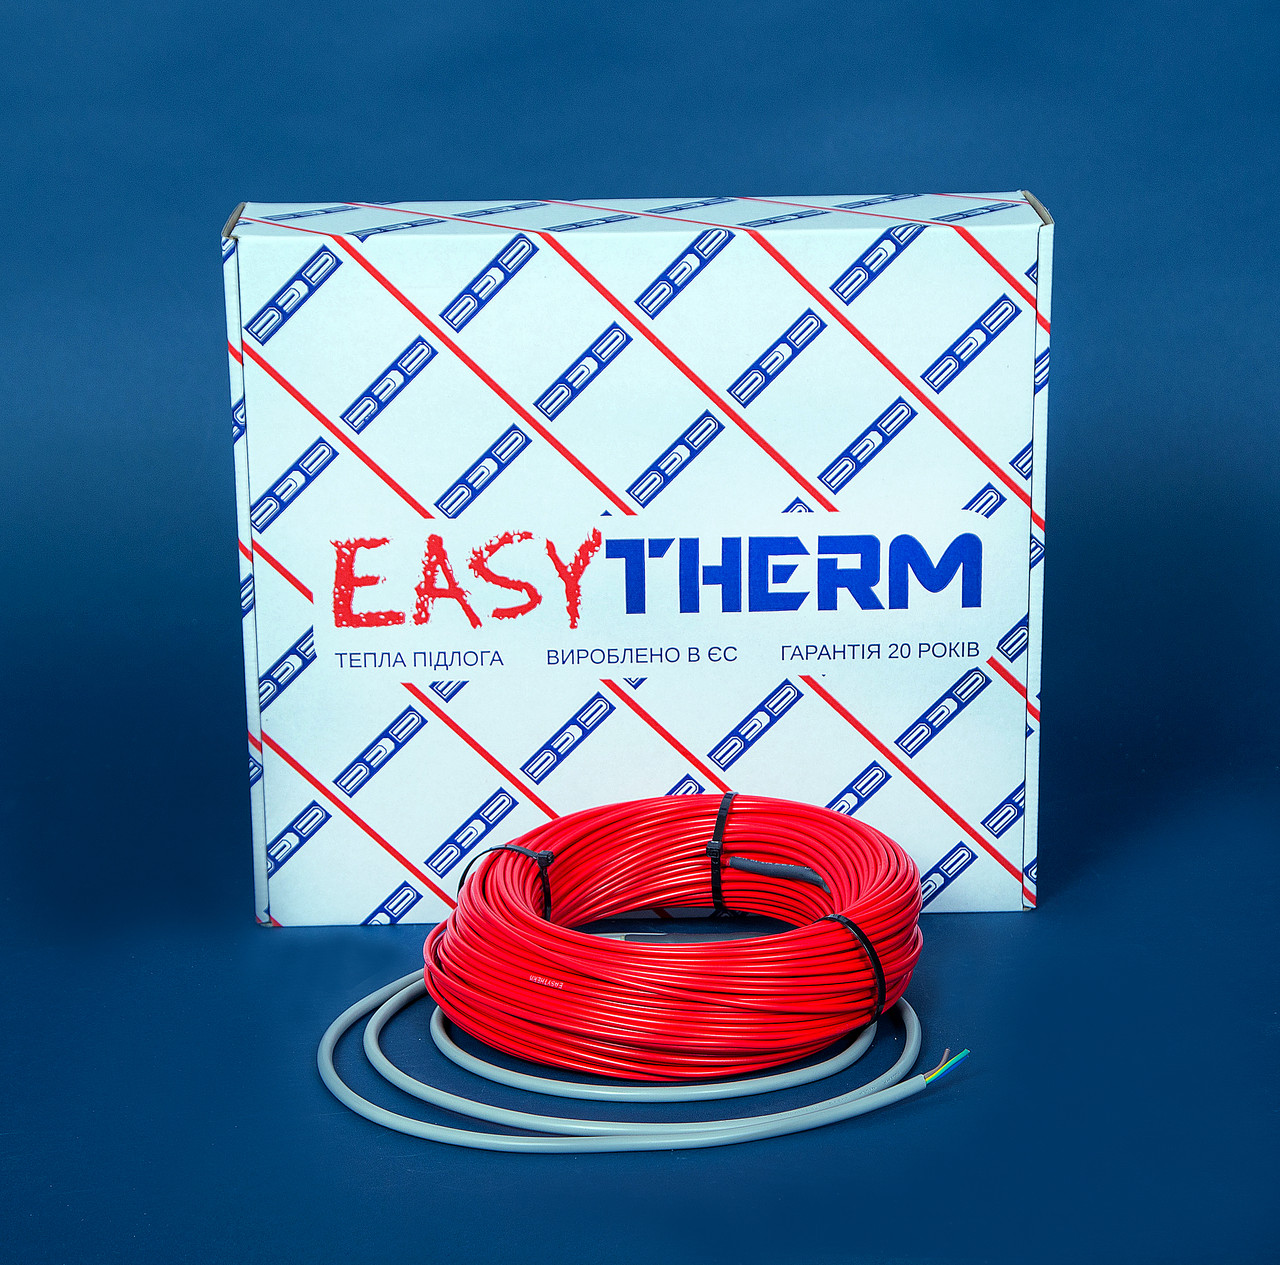 Электрический теплый пол EasyTherm Easycable 75.0 отзывы - изображения 5